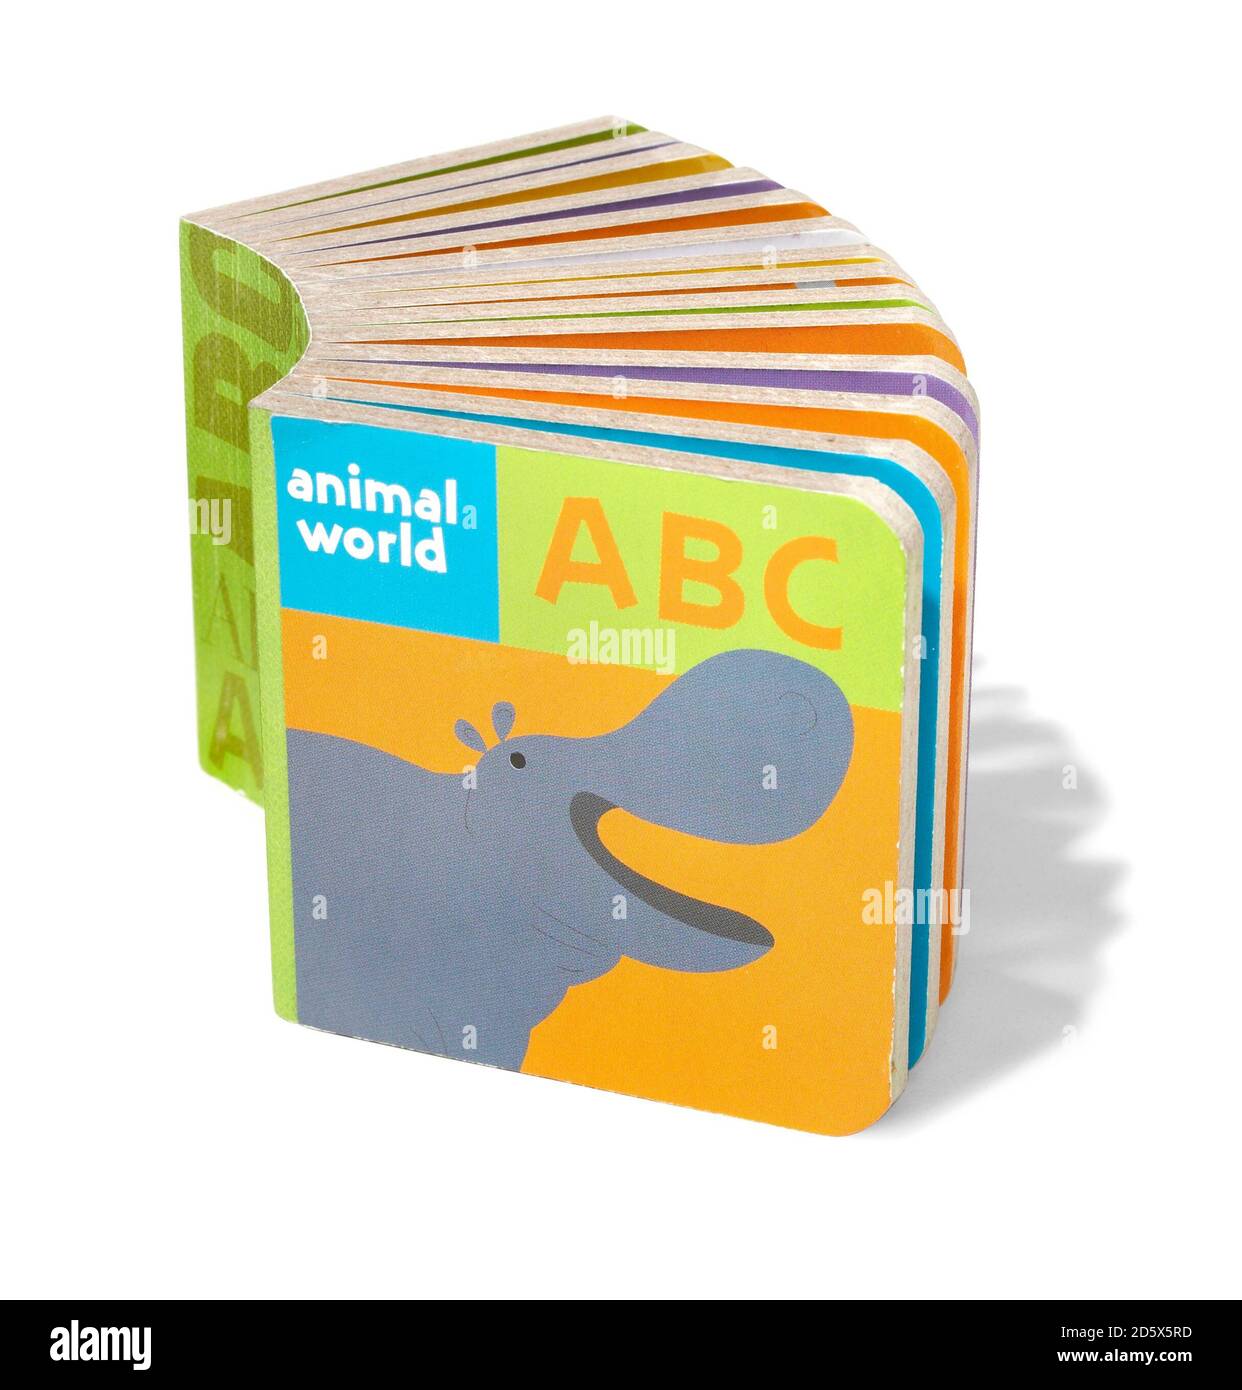 Maukilo Tier Welt abc Block Buch auf einem weißen fotografiert Hintergrund Stockfoto